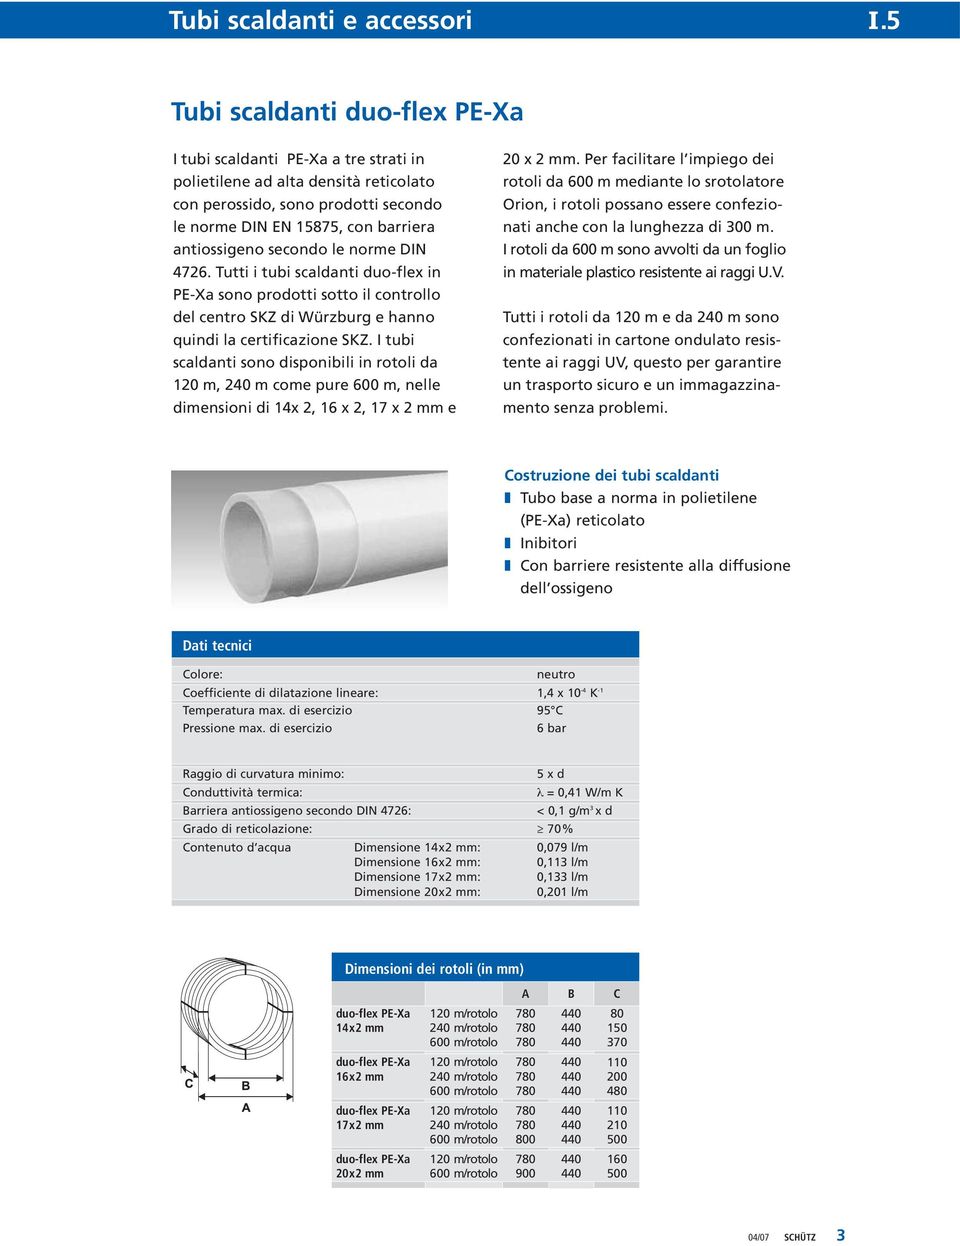 I tubi scaldanti sono disponibili in rotoli da 120 m, 240 m come pure 600 m, nelle dimensioni di 14x 2, 16 x 2, 17 x 2 mm e 20 x 2 mm.